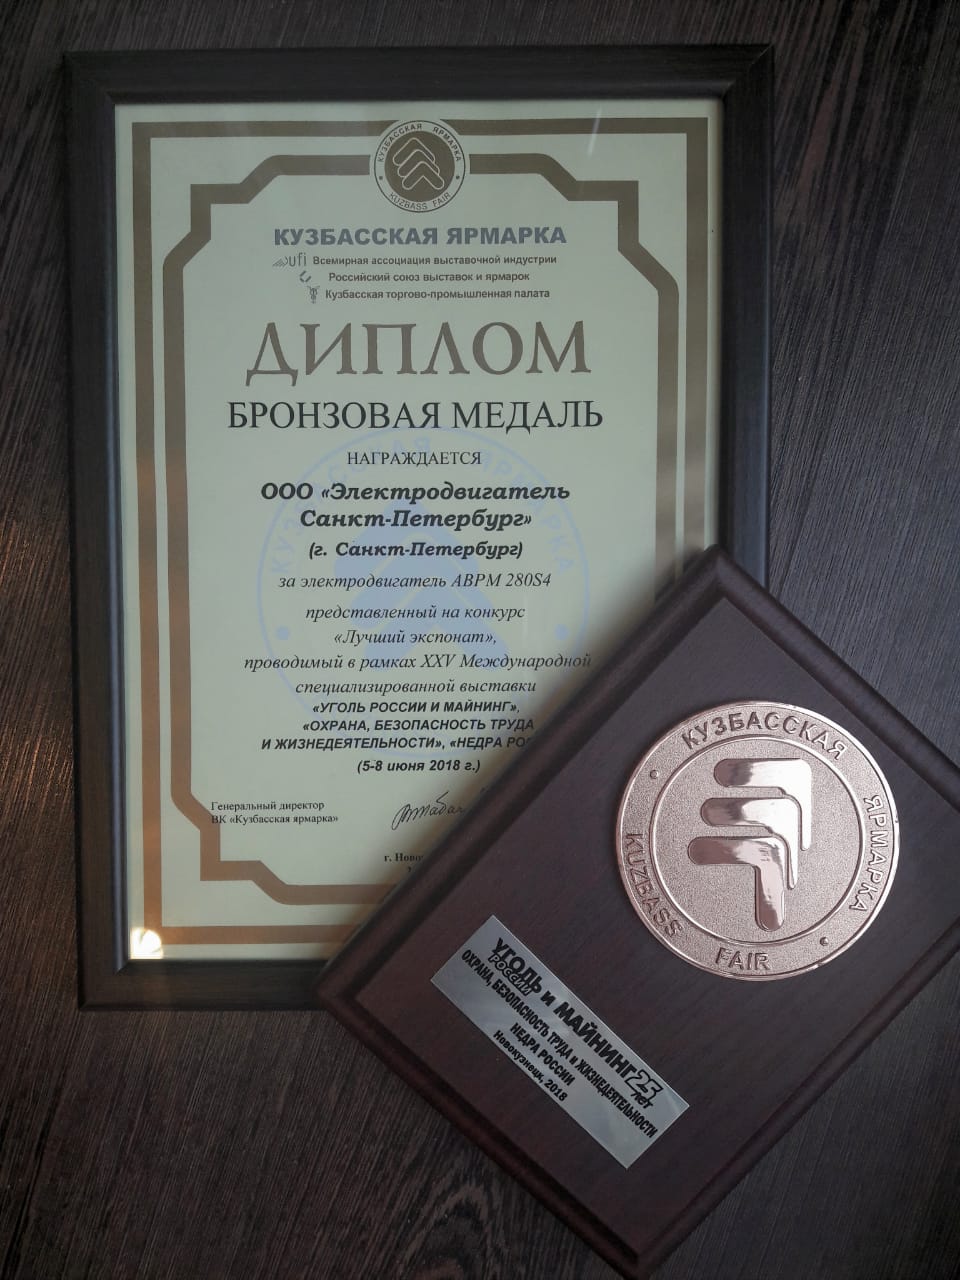 Электродвигатель Санкт-Петербург получил две награды на выставке Уголь России и майнинг 2018.